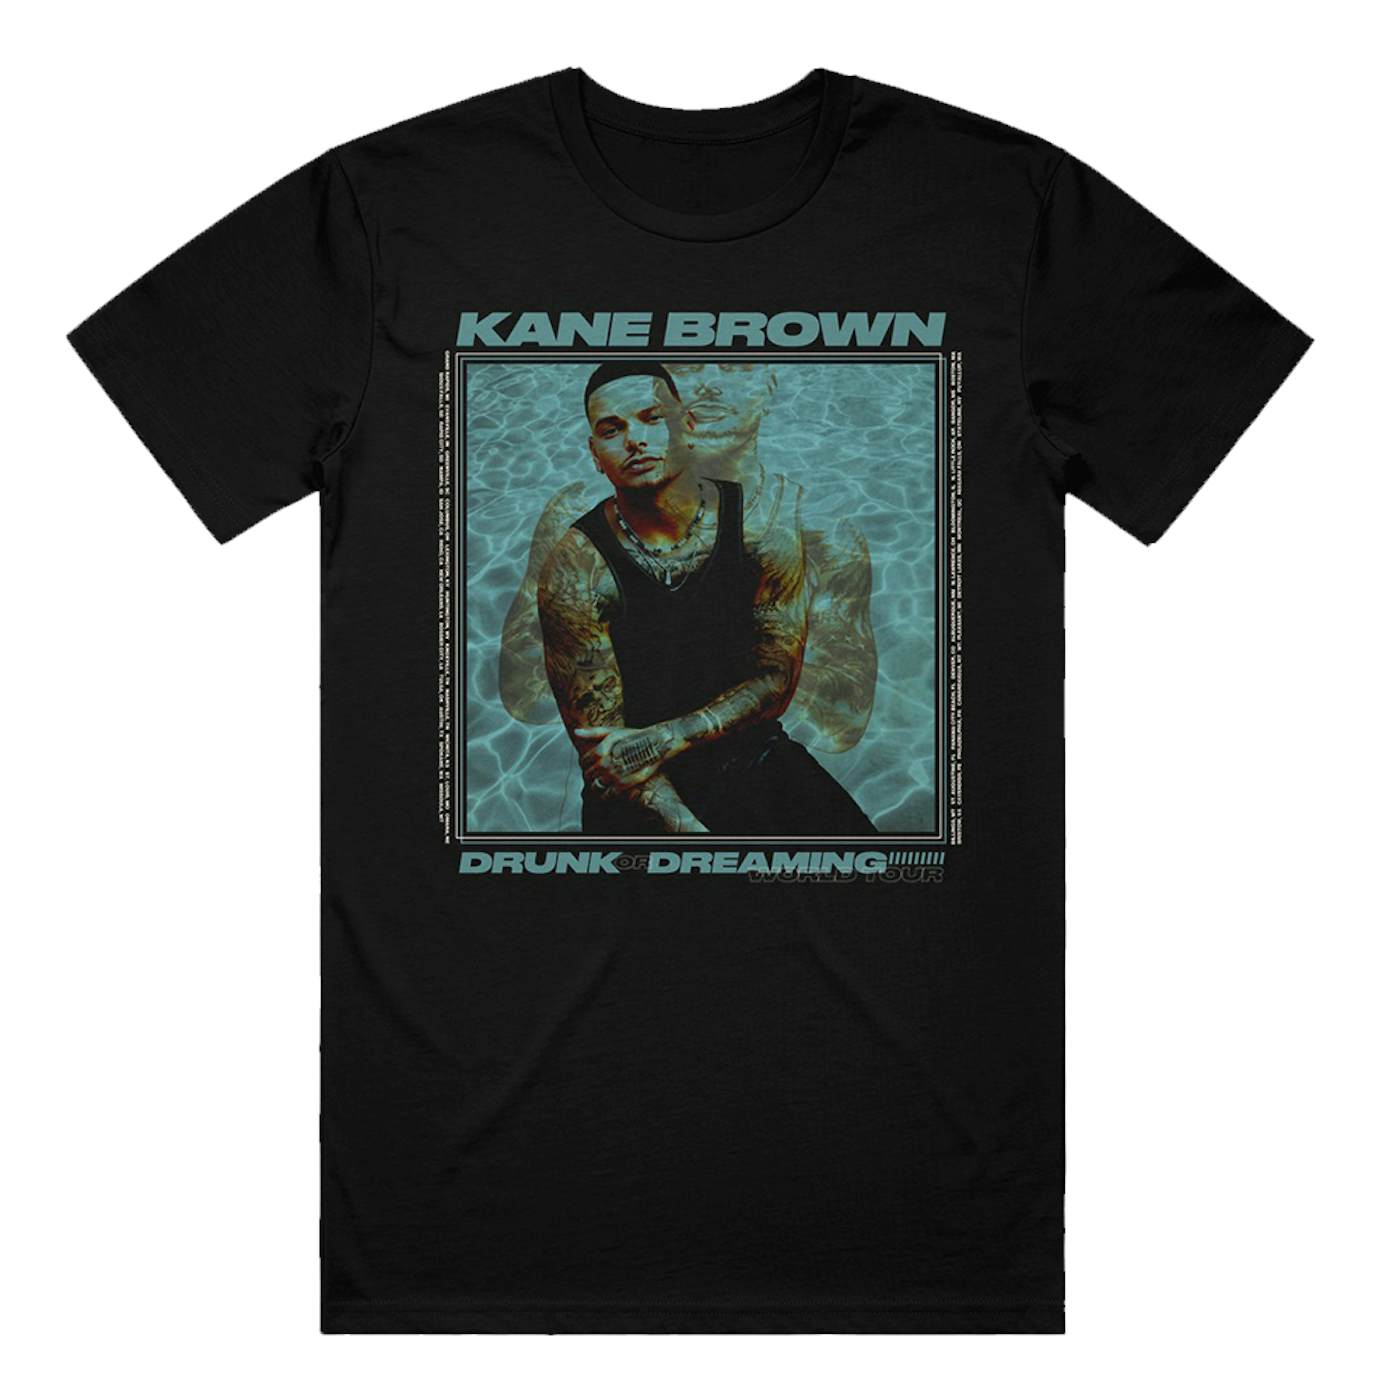 Kane Brown Drunk or Dreaming Tee